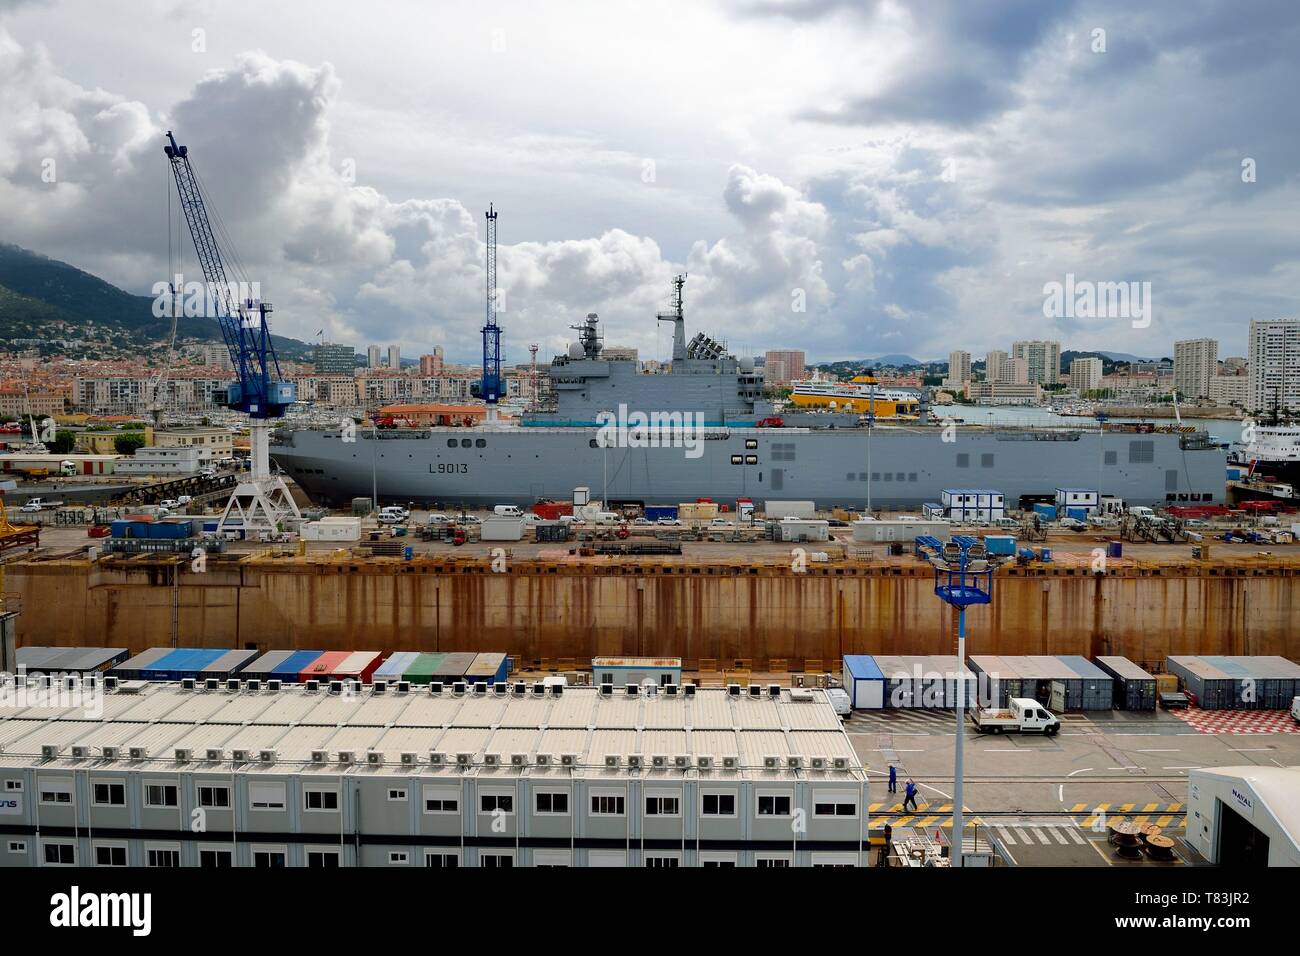 Francia, Var, Toulon, la base naval (Arsenal), Mistral (L9013) plomo barco del buque de asalto anfibio, un tipo de helicóptero, portadora de la Armada Francesa Foto de stock